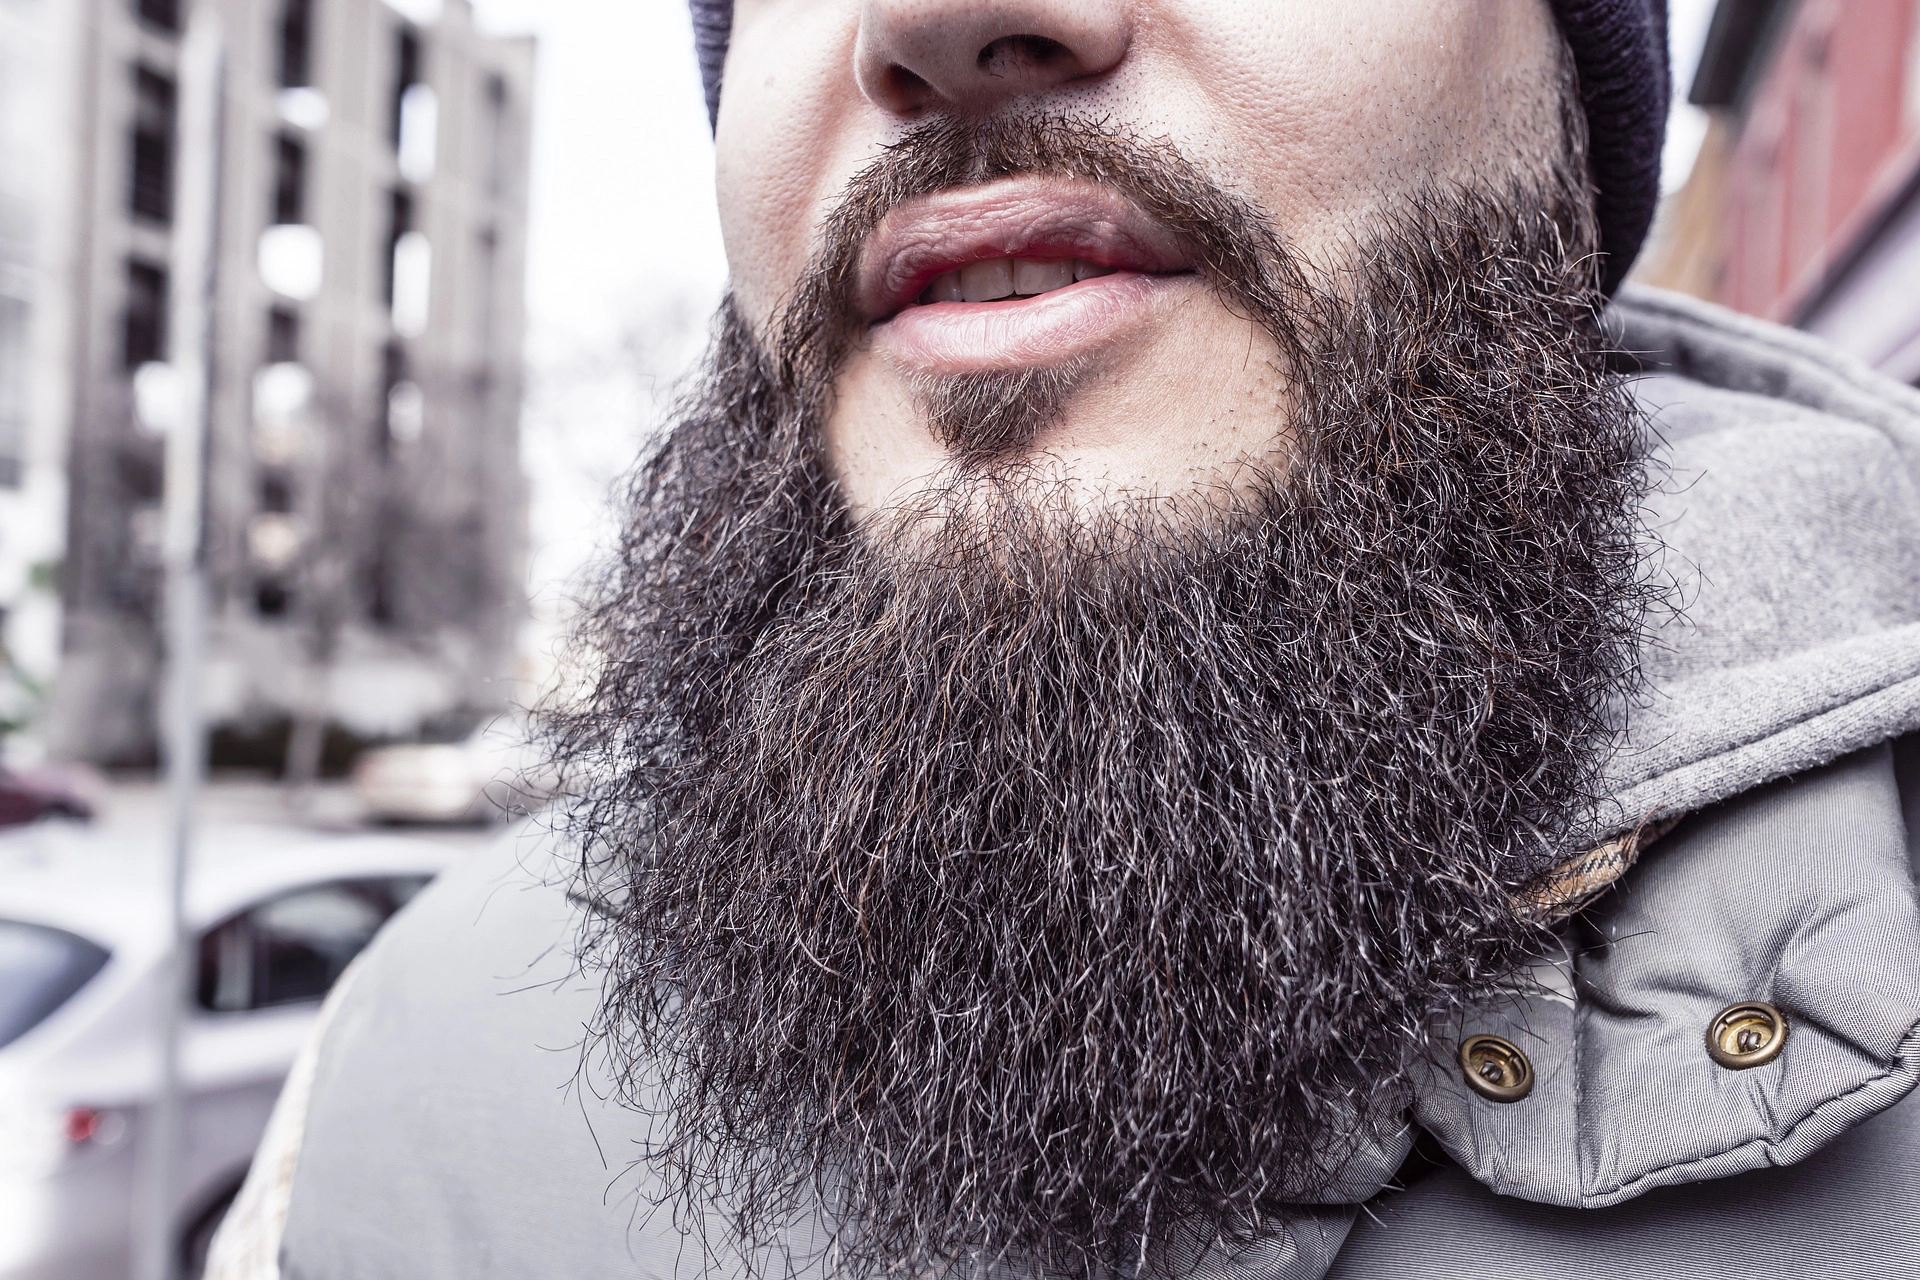 men grow beards,beards,growing beards